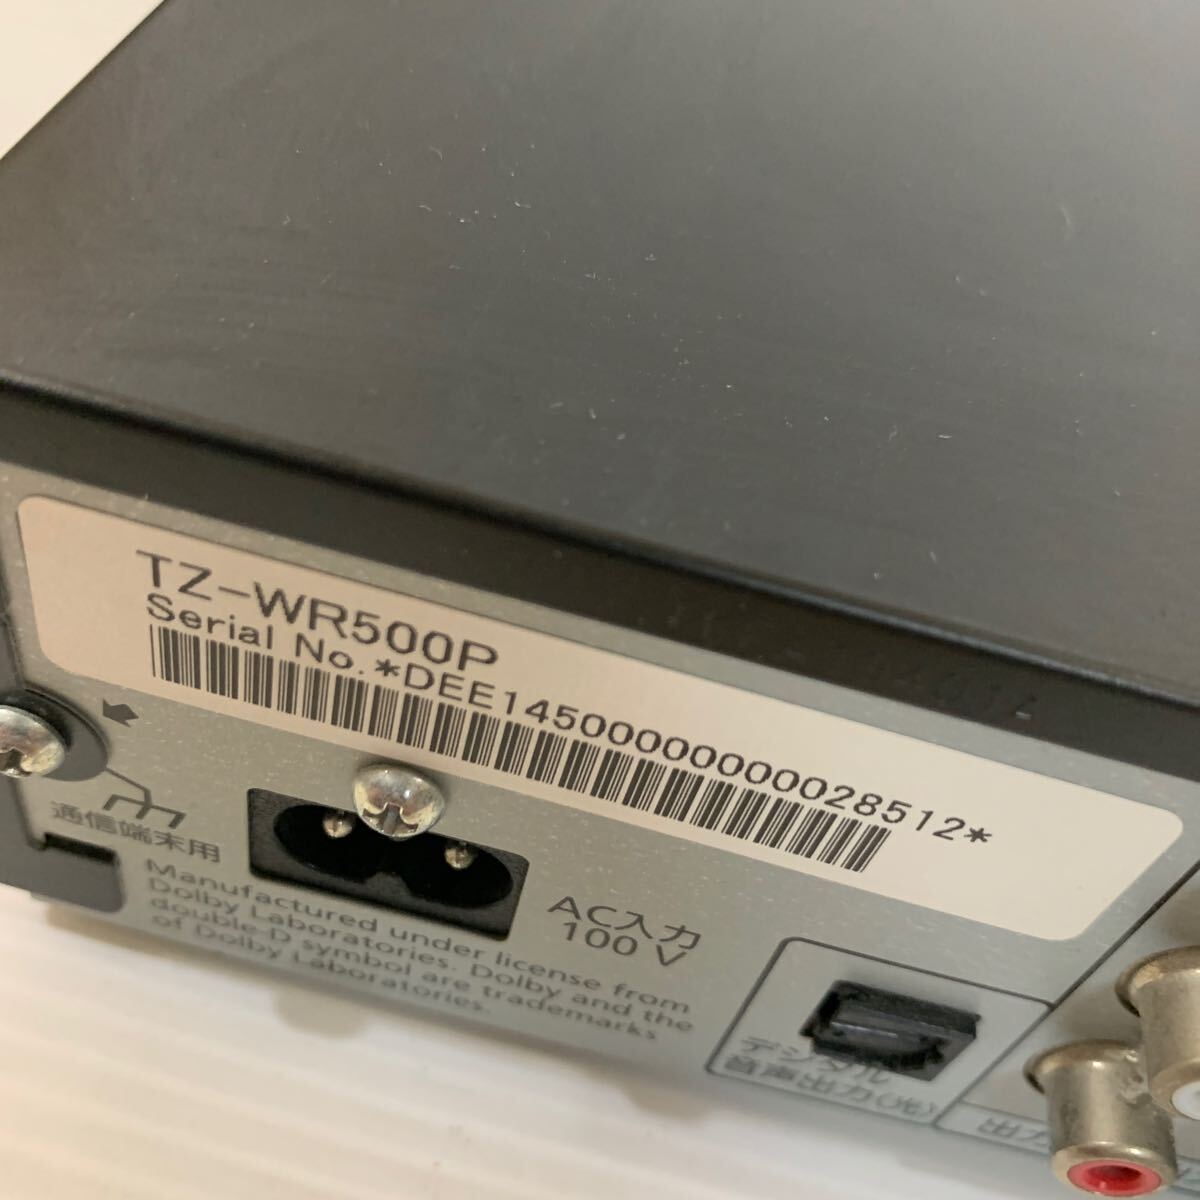 Panasonic Panasonic TZ-WR500Ps медный магнитофон HDD рабочее состояние подтверждено (04.13)